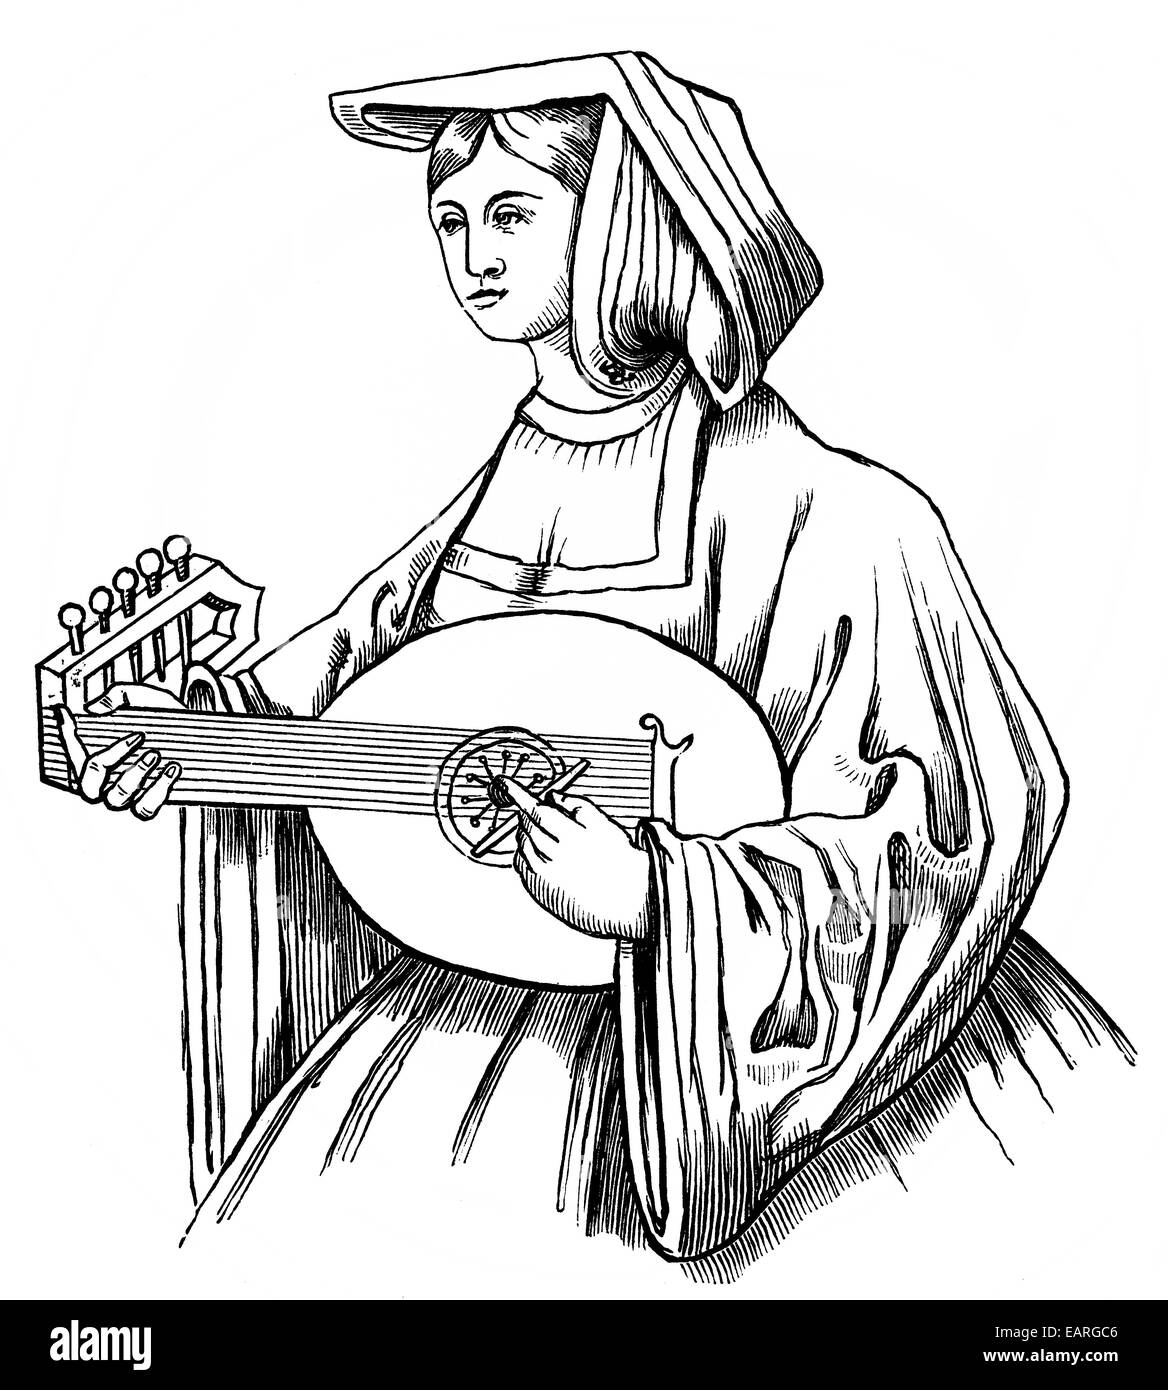 Laudista con una púa (siglo xvi), mit einem Lautenspielerin Plektrum oder plectro, 16. Jahrhundert Foto de stock